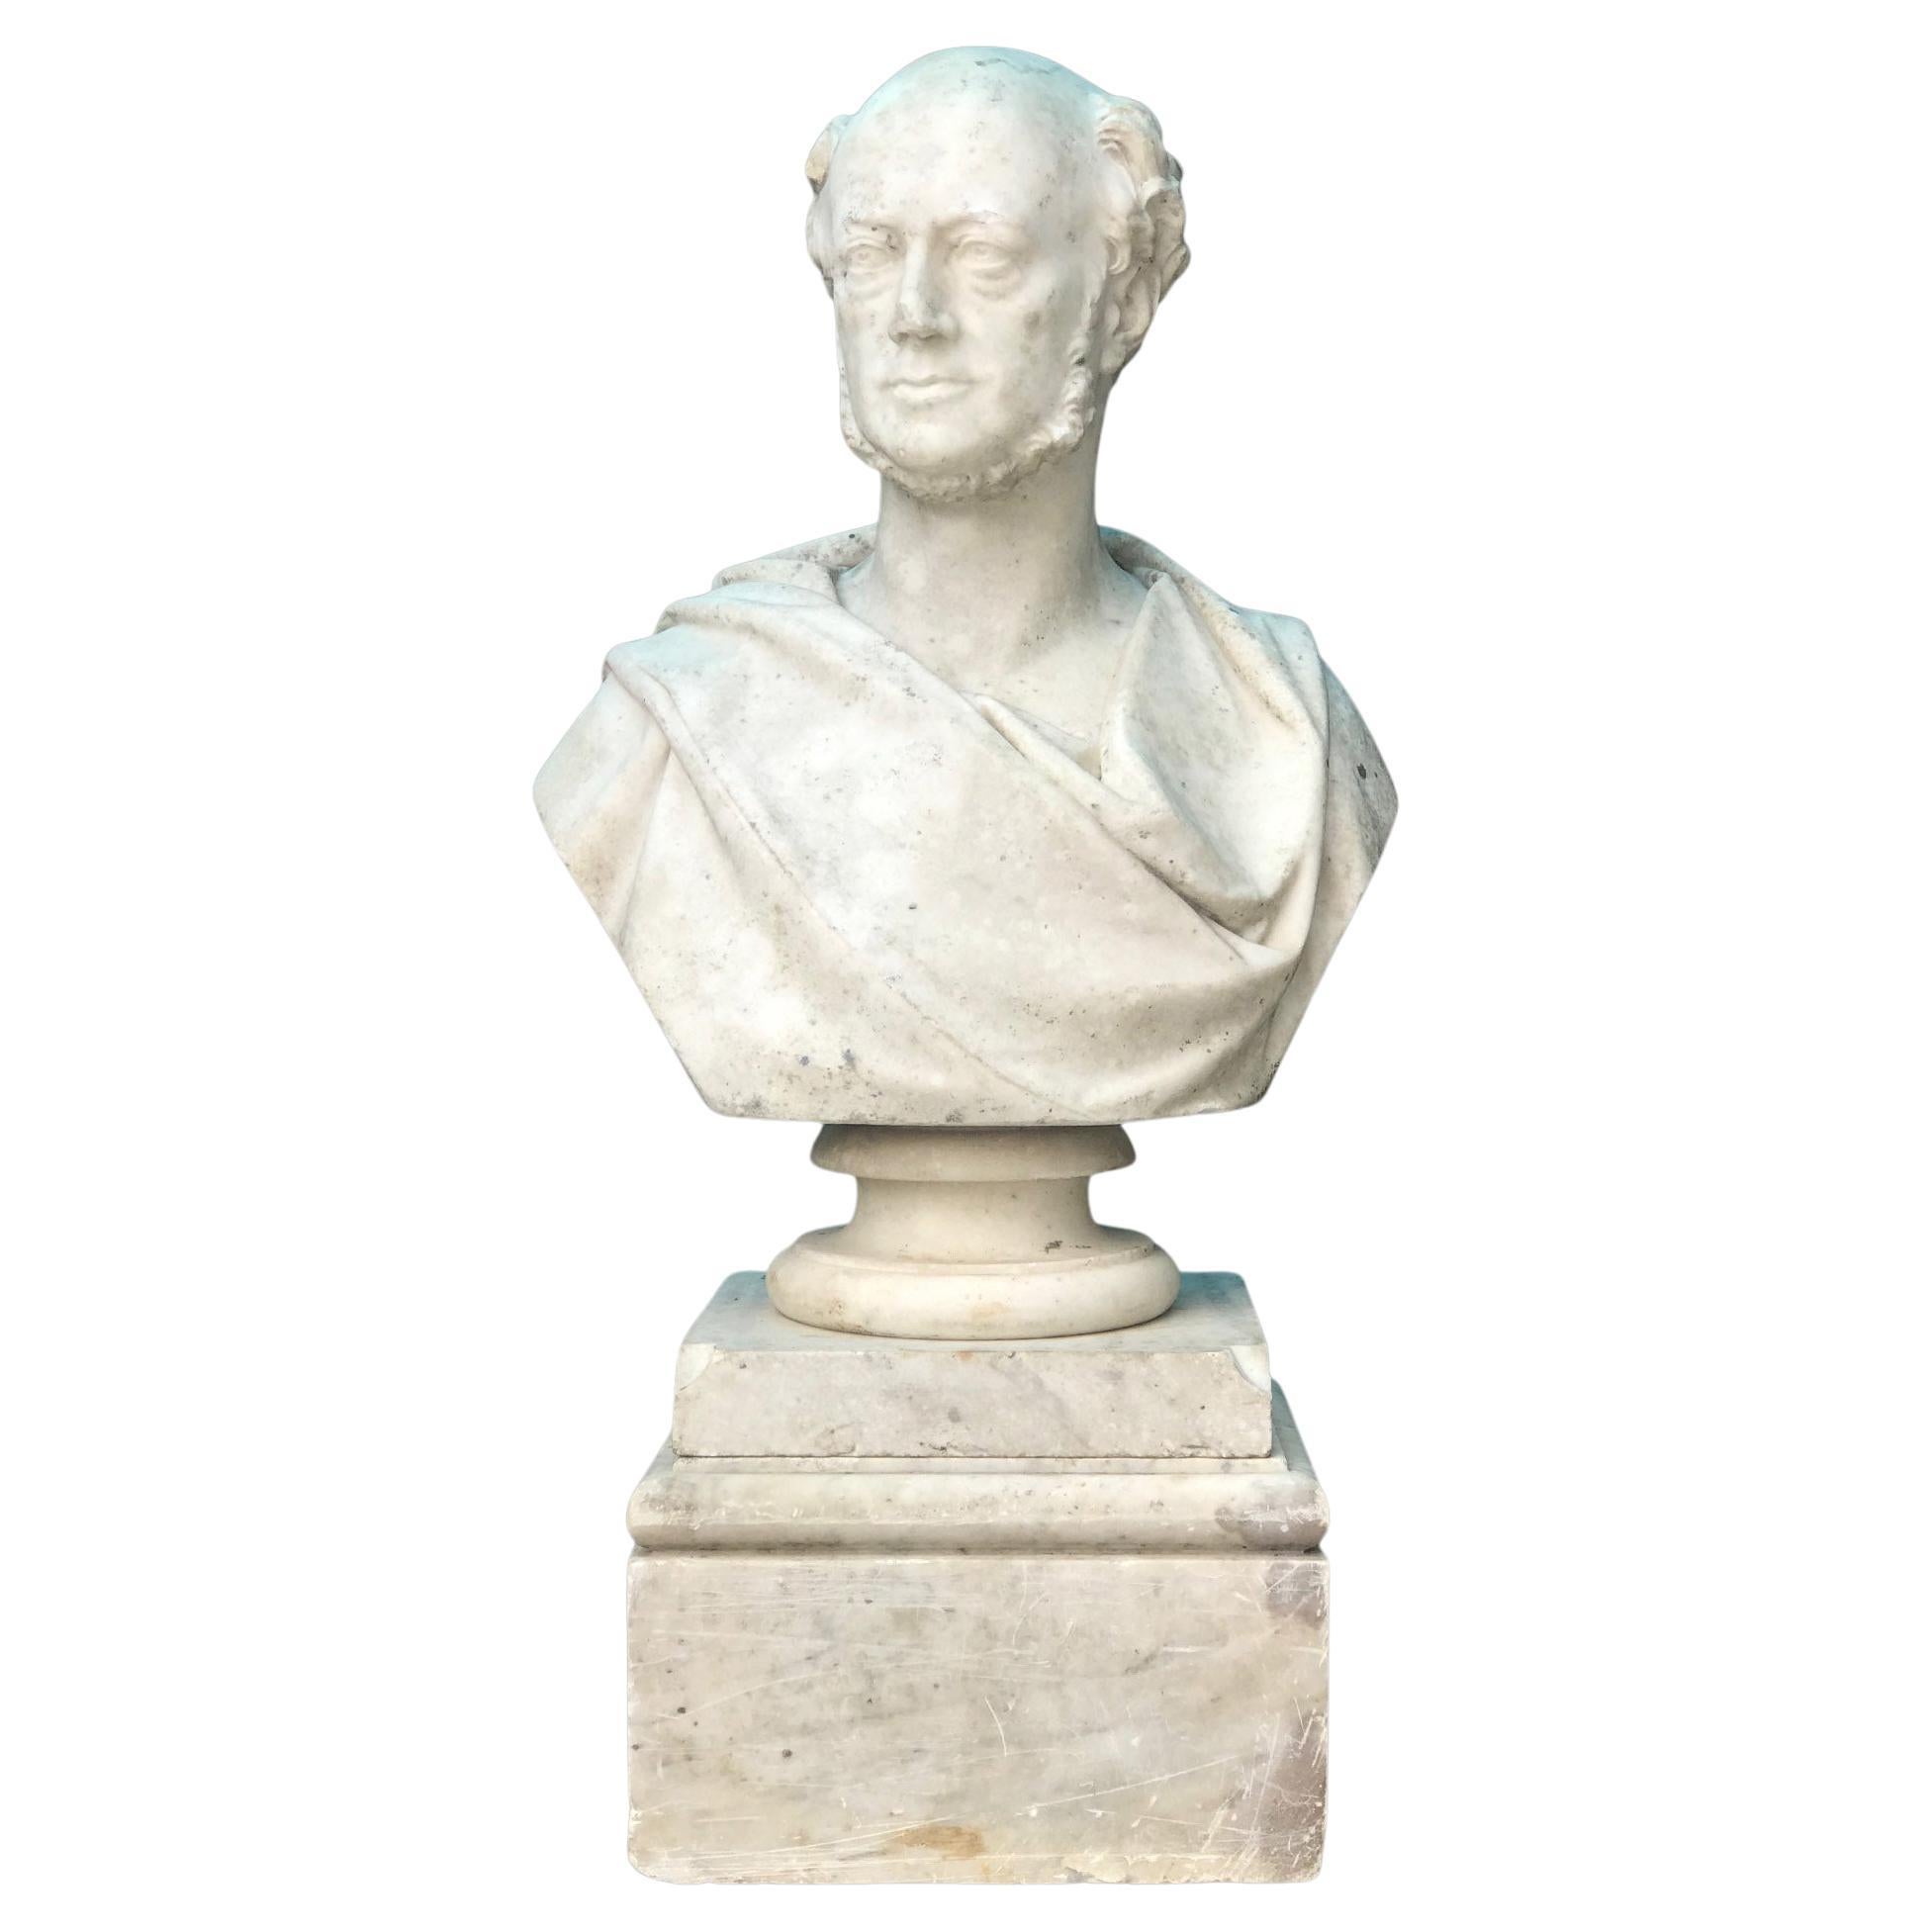 Grand buste en marbre du 19ème siècle représentant le Gentleman Matthew Noble